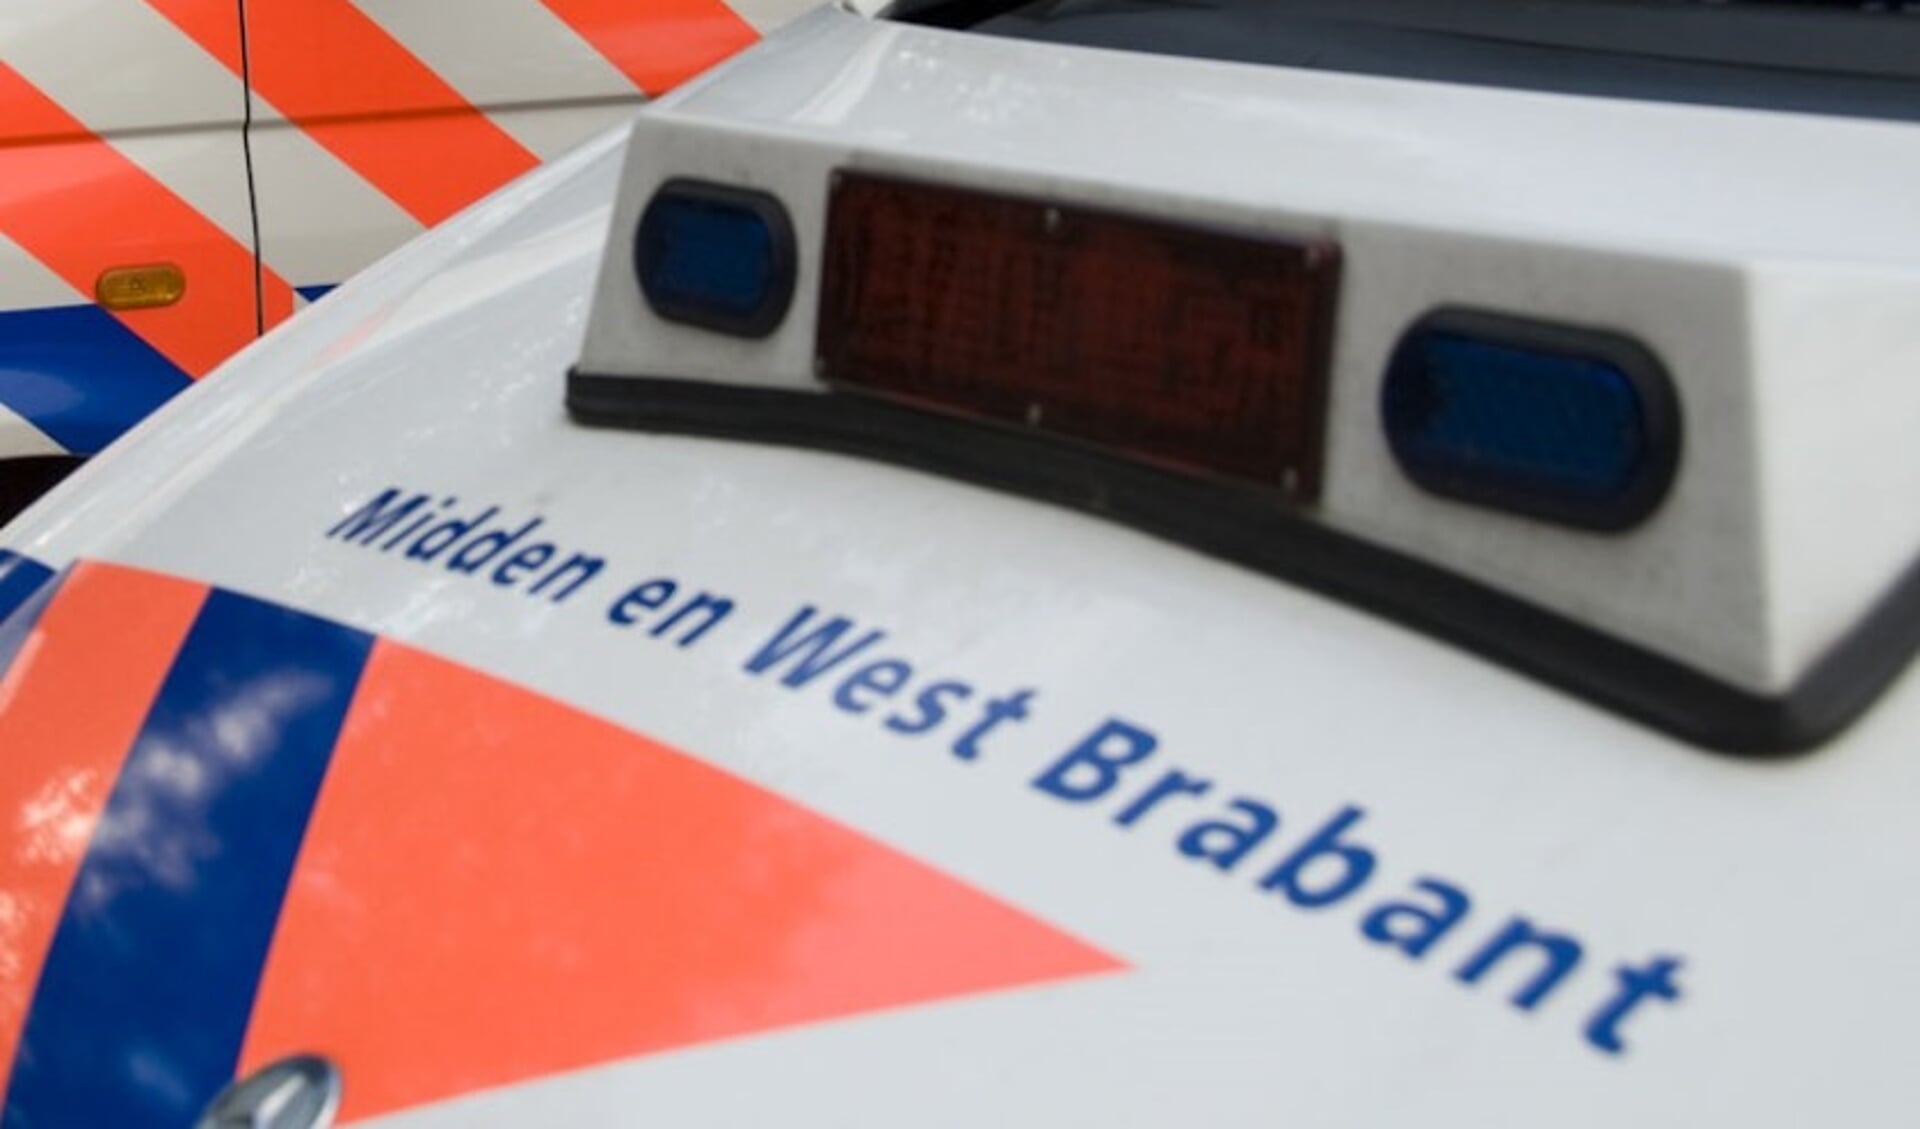 Dienstvoertuig politieteam Bergen op Zoom ernstig beschadigd